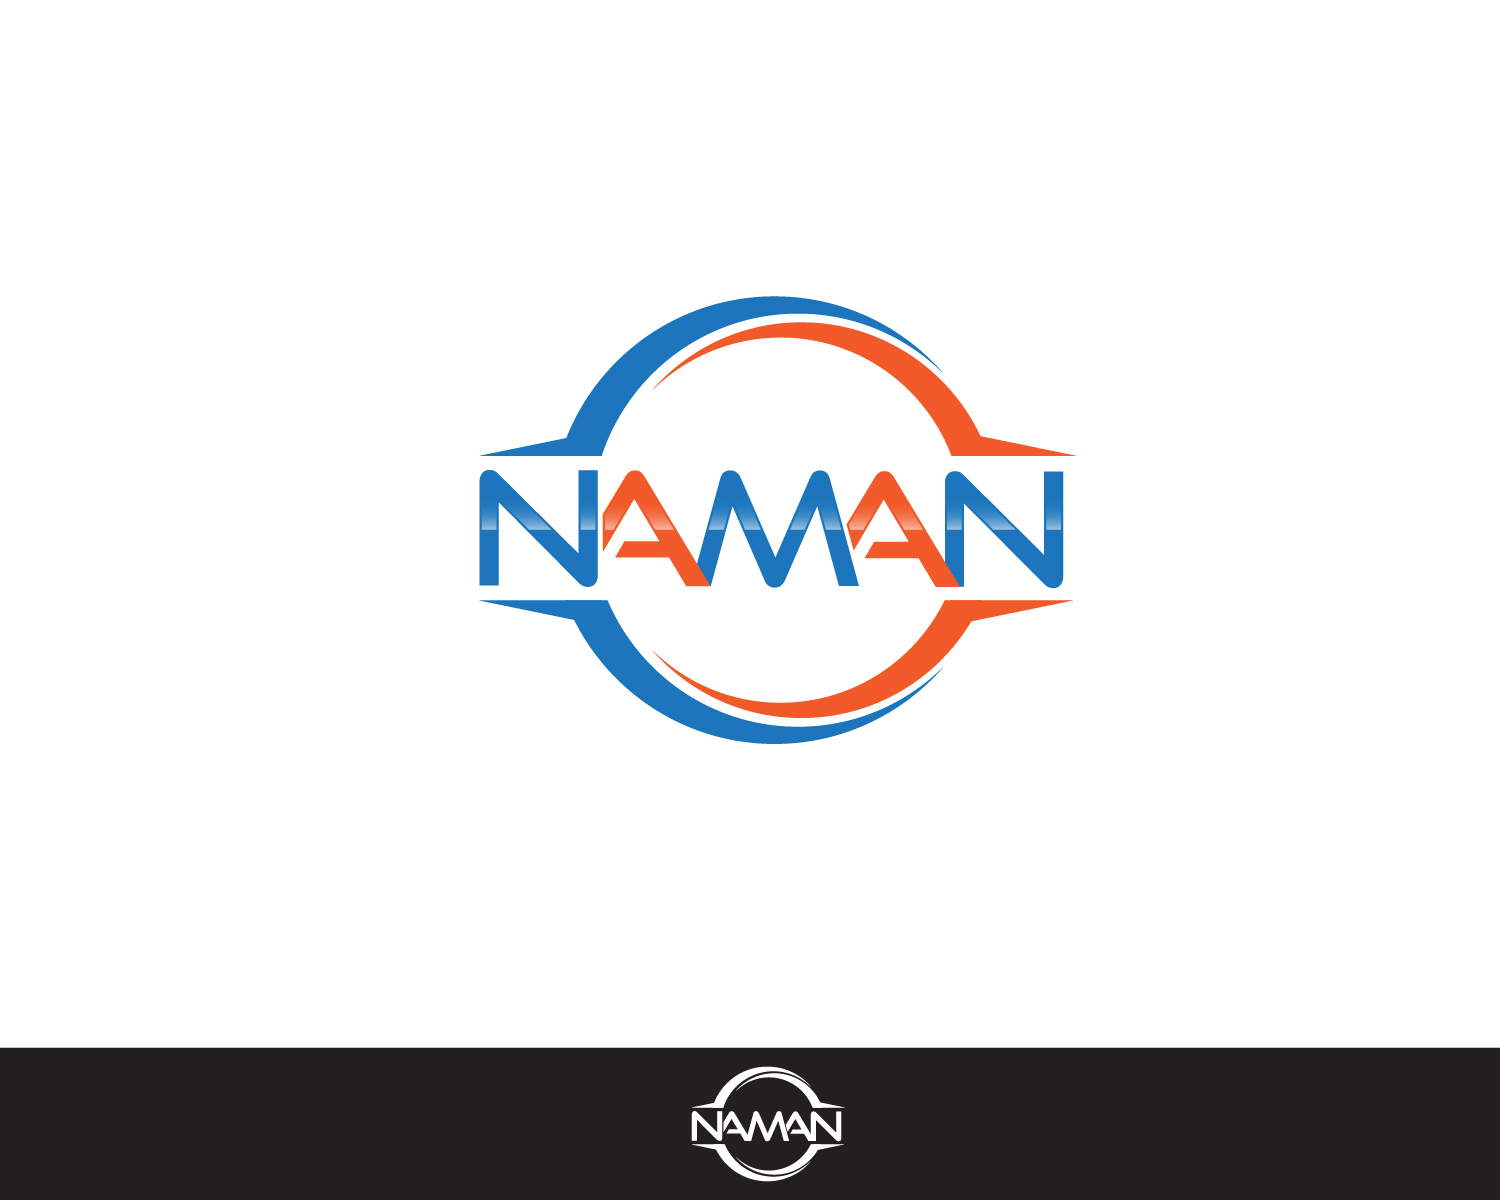 Amol Kapse - Naman Logo - Free Transparent PNG Download - PNGkey